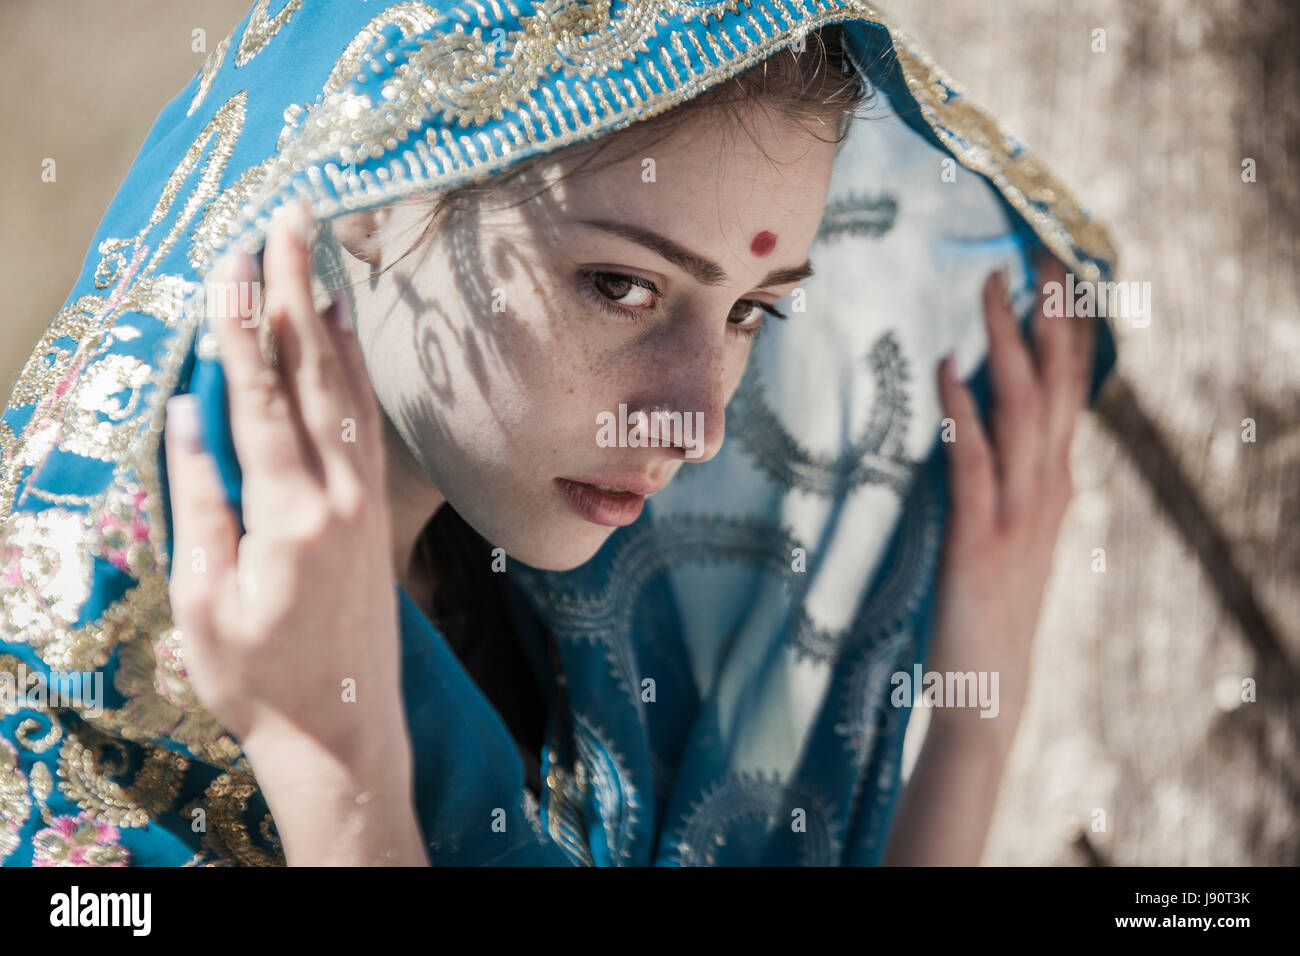 La jeune fille l'recouvert d'un sari, un portrait visage Banque D'Images